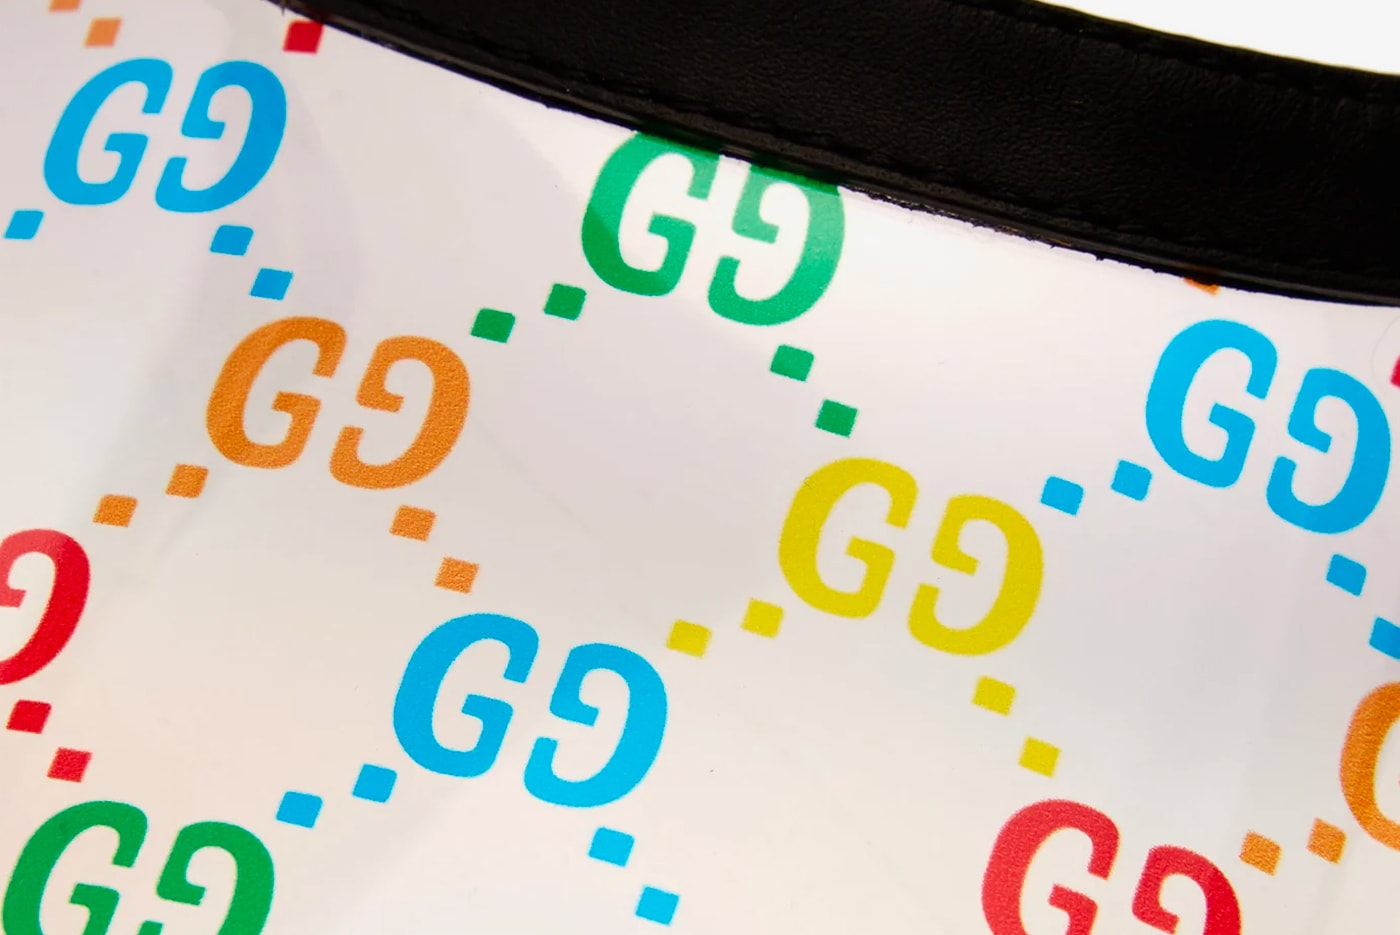 구찌, 무지개색 'GG' 로고의 투명 PVC 바이저 출시